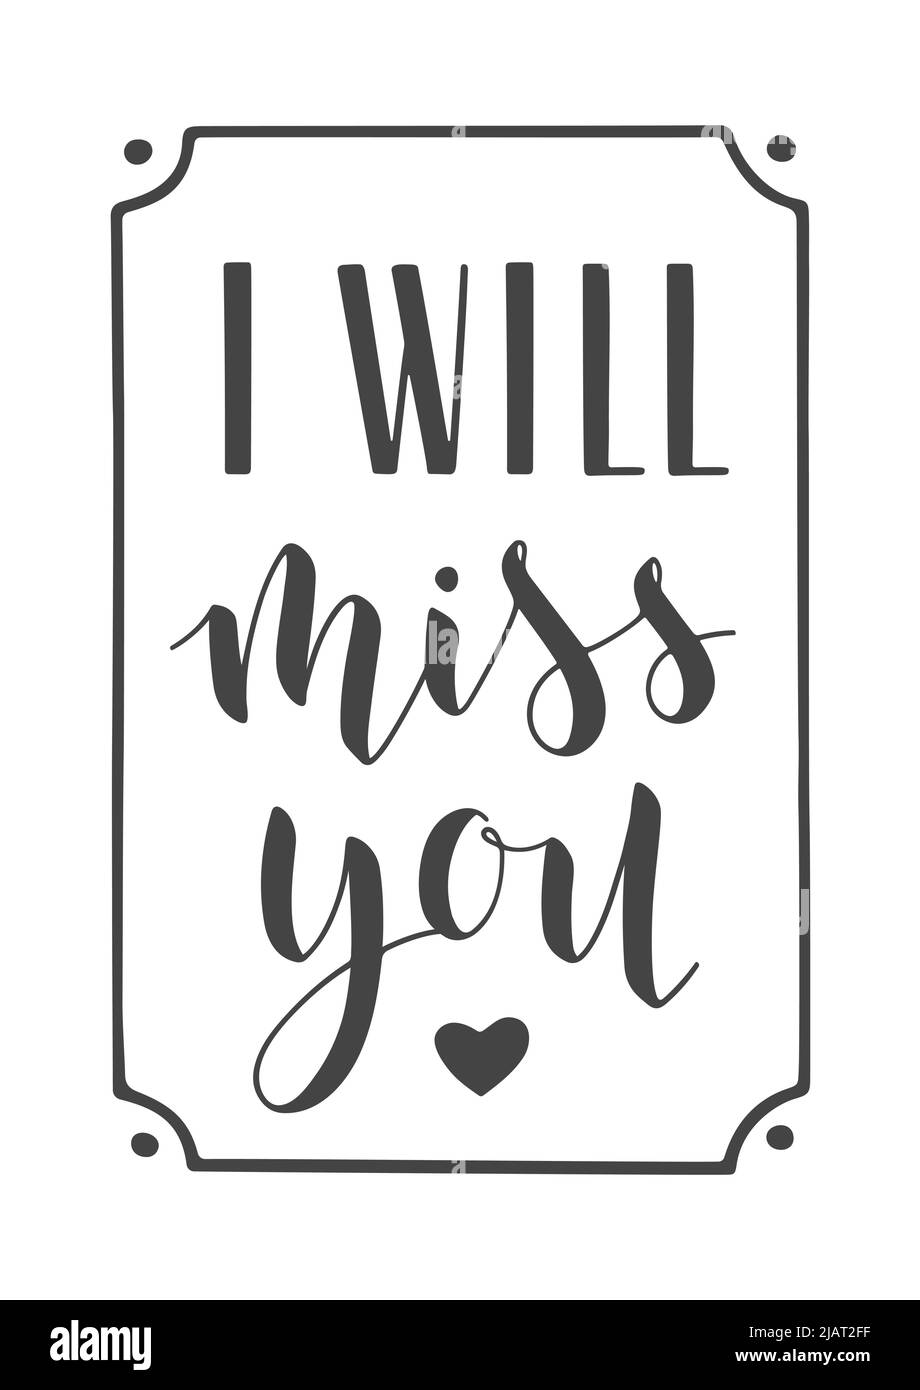 Handgeschriebene Schriftzüge von I will Miss You. Vorlage für Banner, Grußkarte, Postkarte, Einladung, Abschiedsfeier, Poster oder Aufkleber. Stock Vektor